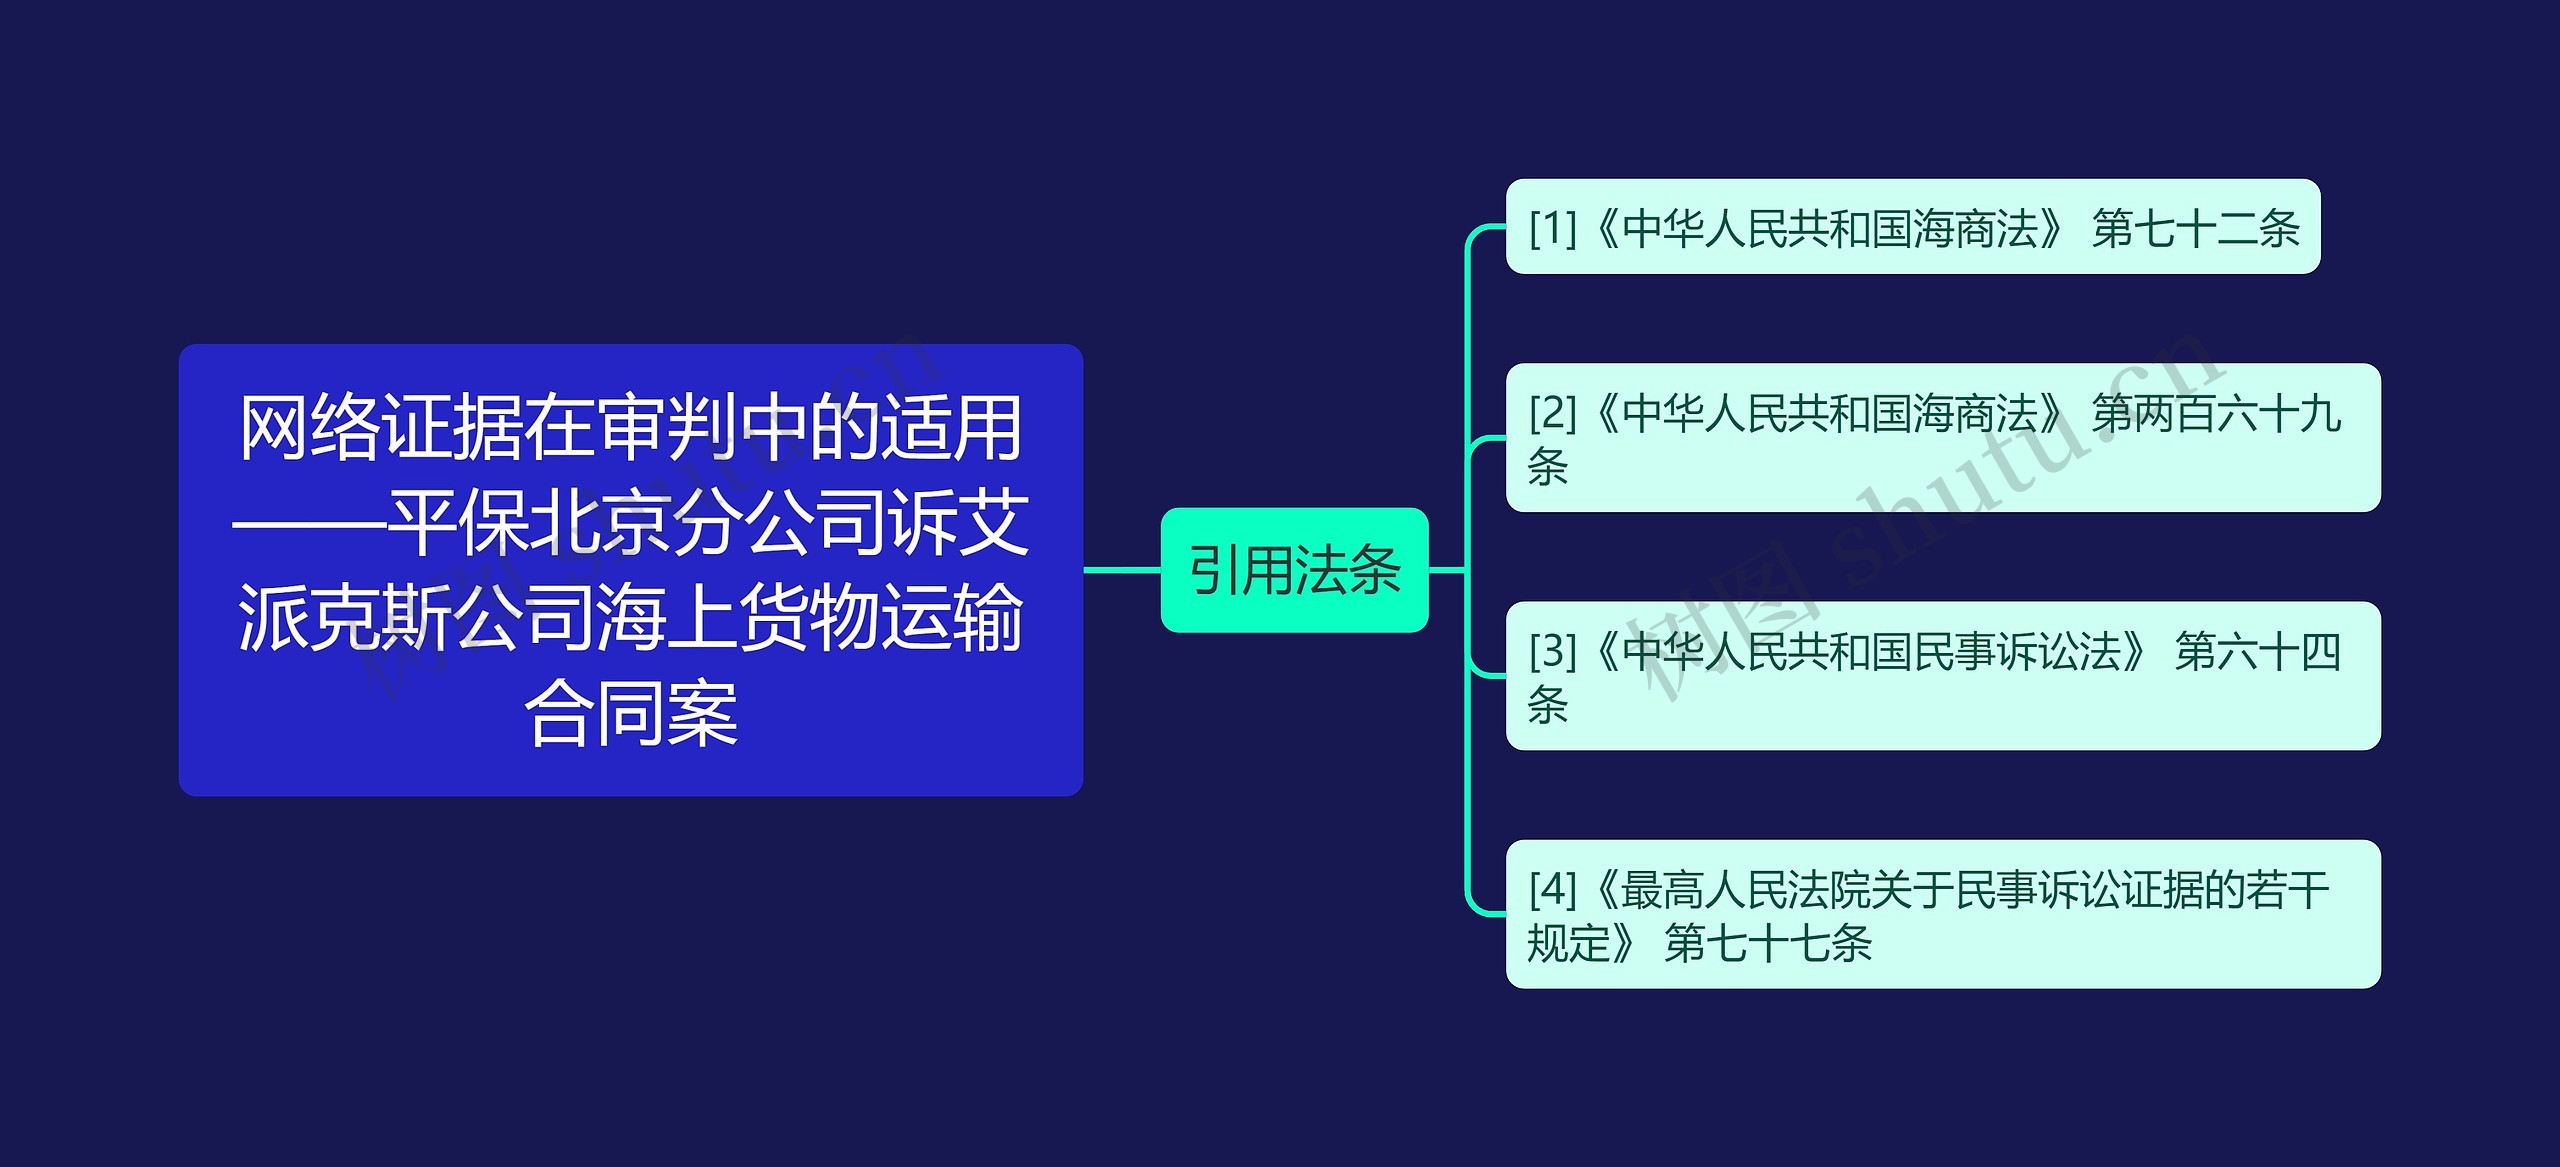 网络证据在审判中的适用——平保北京分公司诉艾派克斯公司海上货物运输合同案思维导图